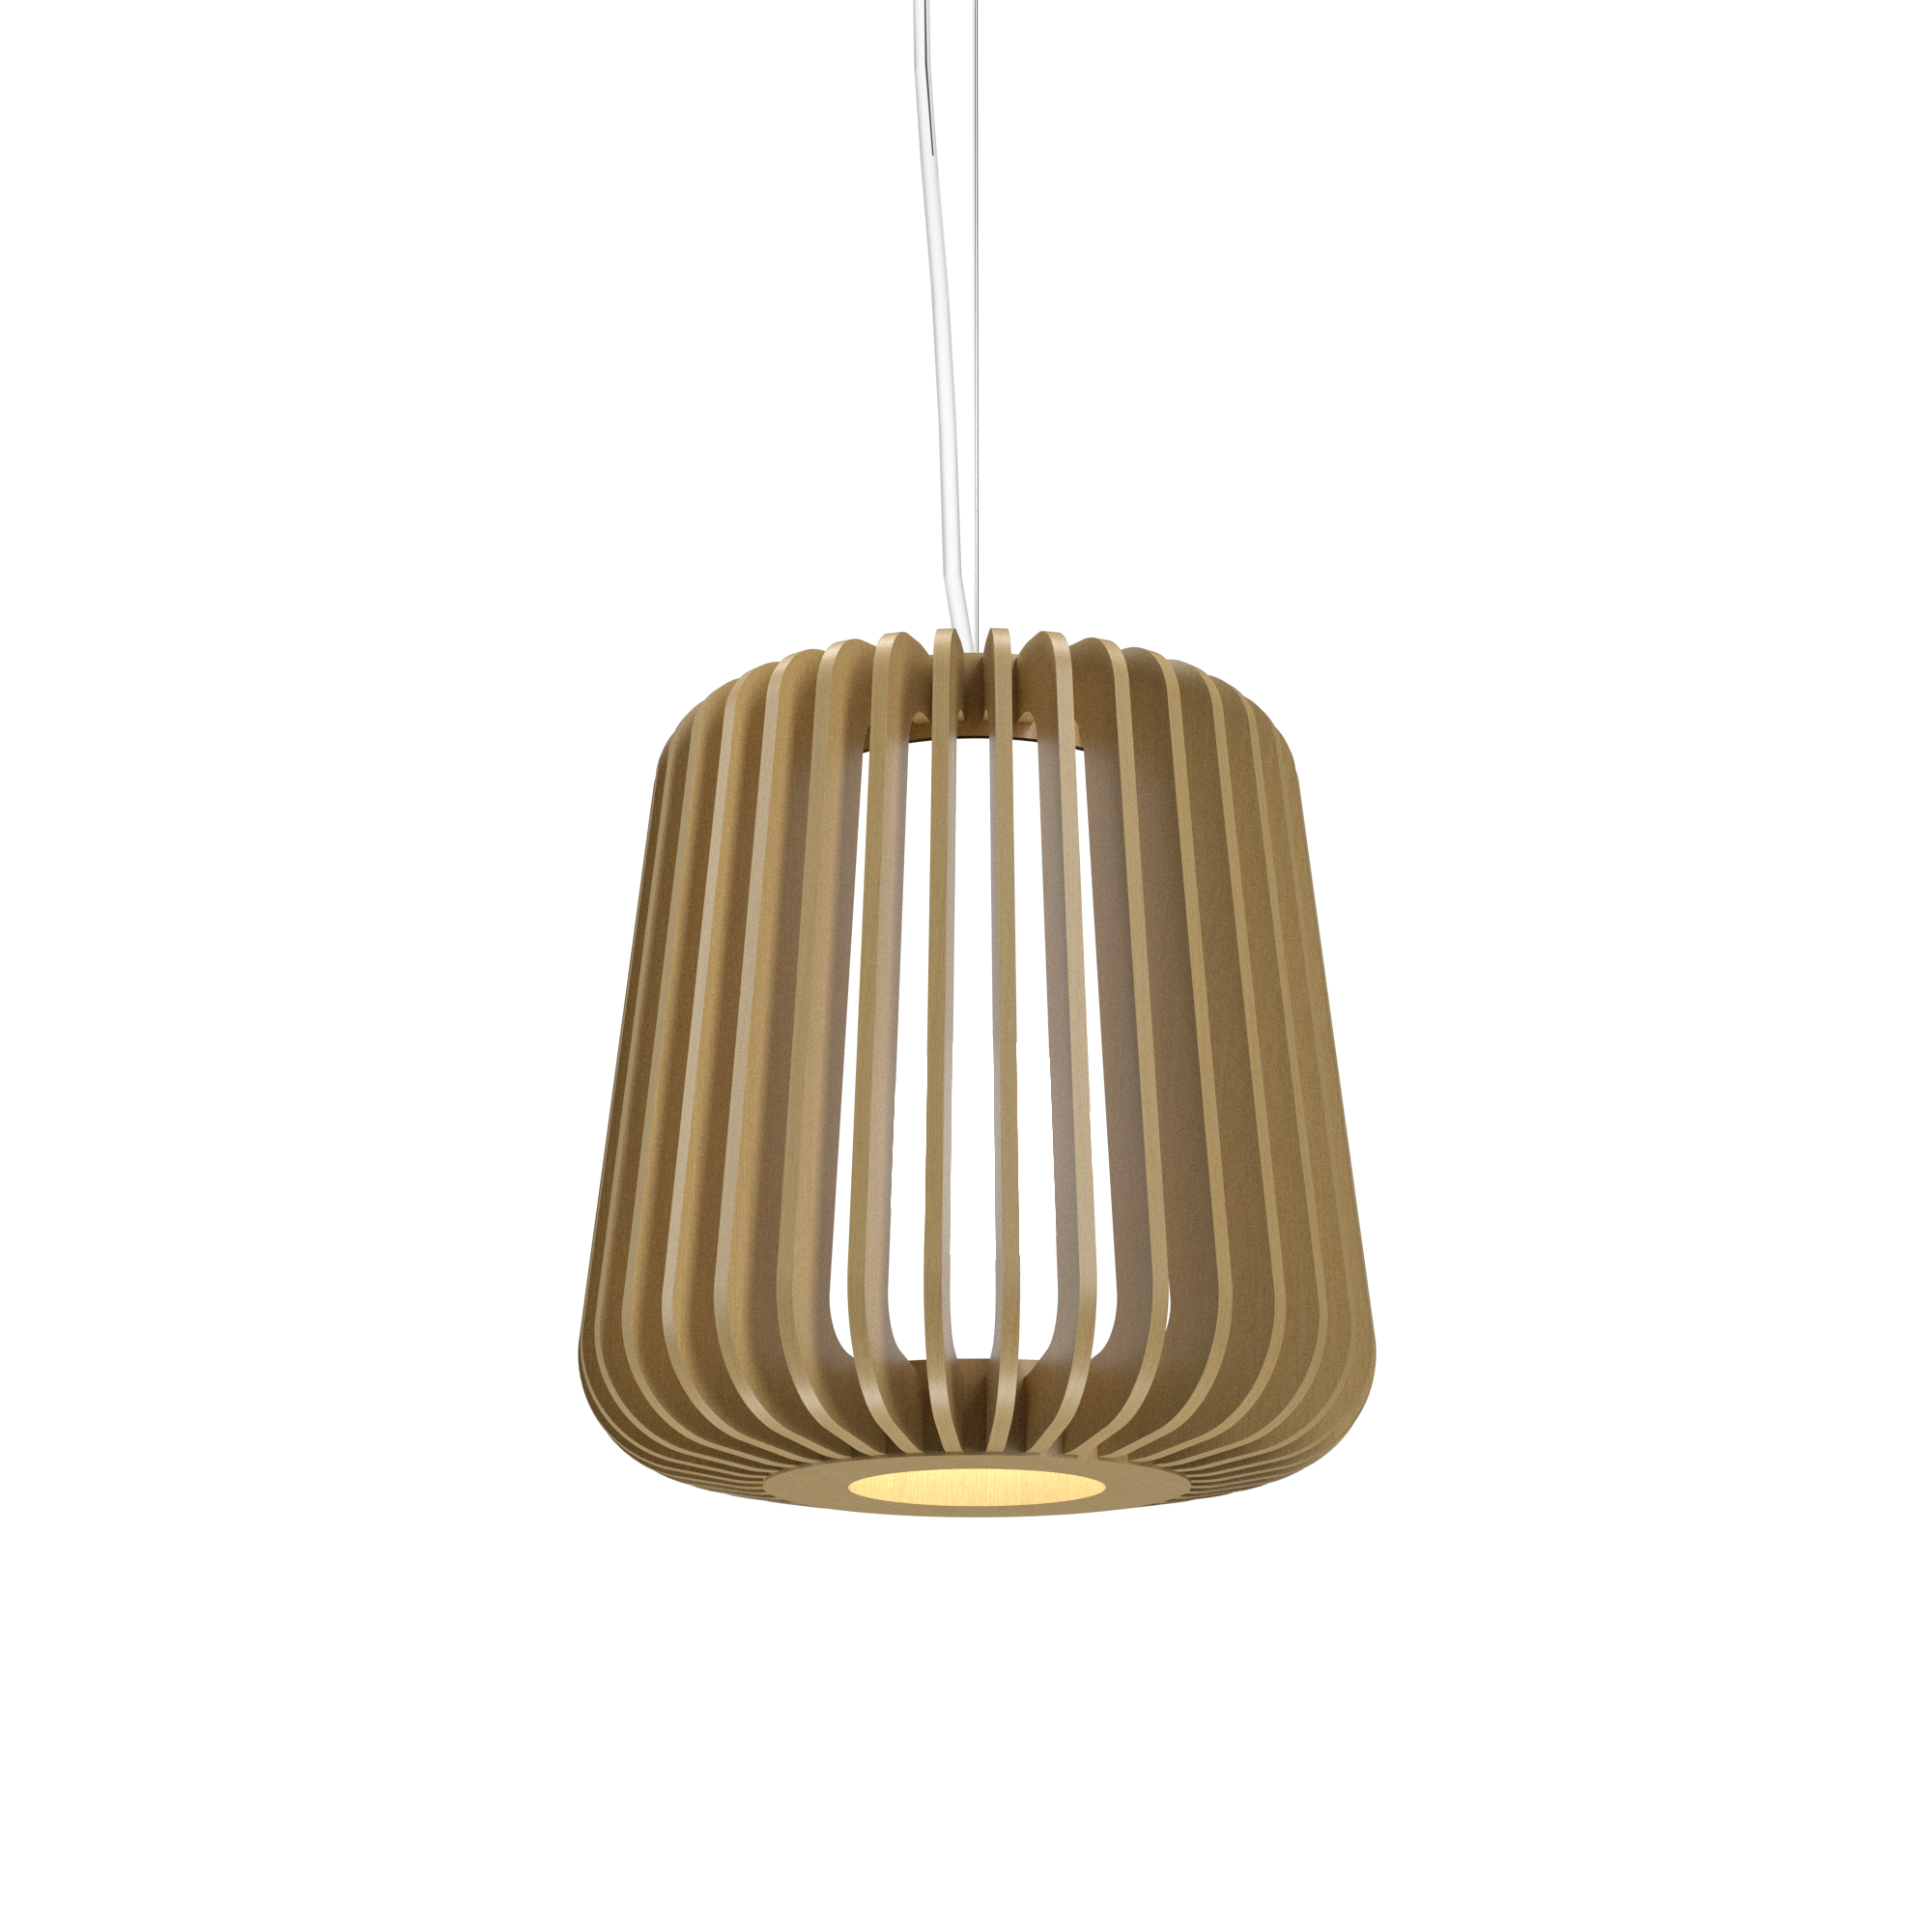 Pendant Lamp Accord Stecche Di Legno 1426 - Stecche Di Legno Line Accord Lighting | 49. Organic Gold